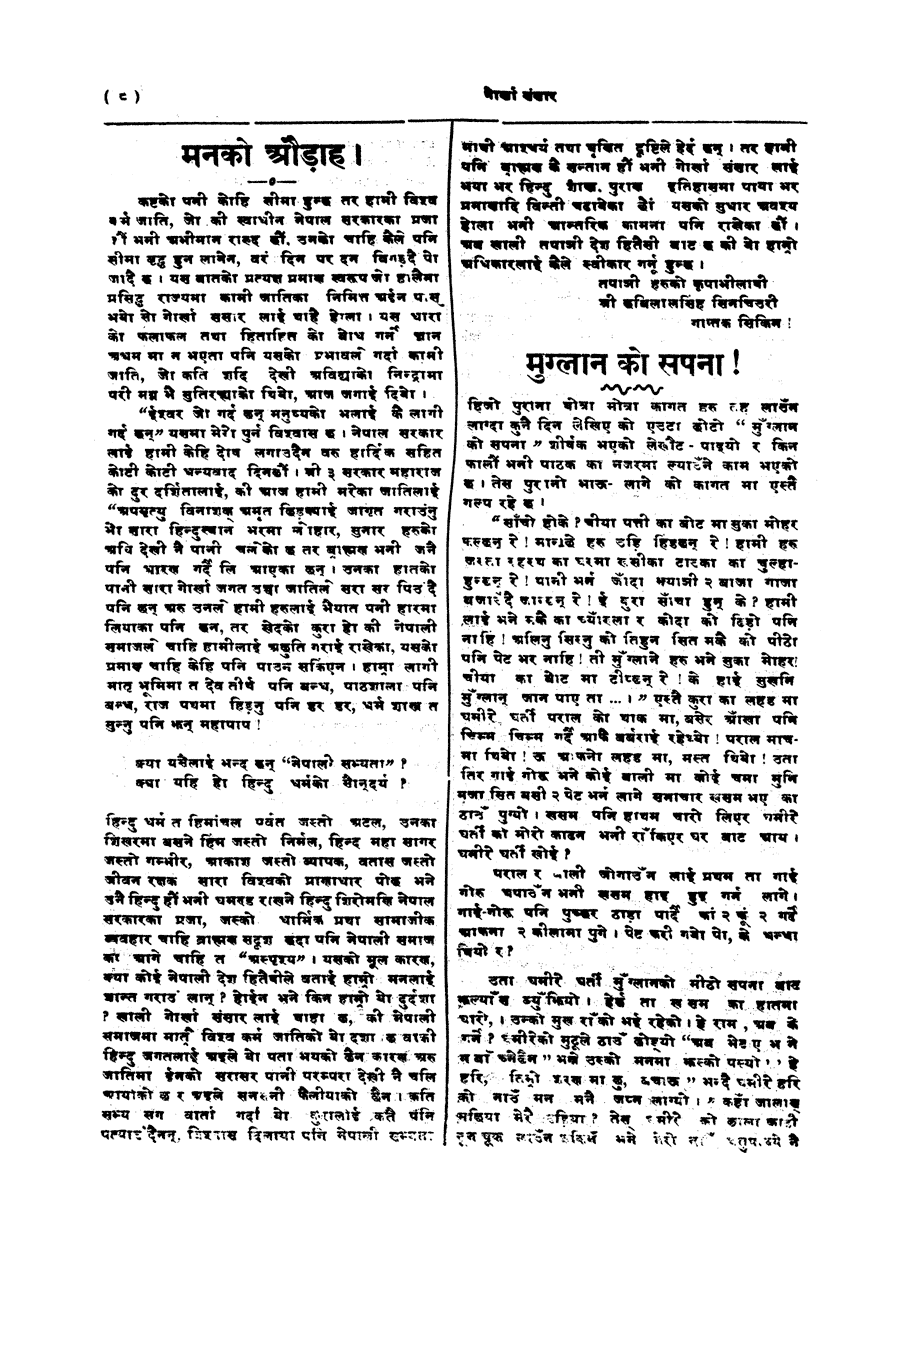 Gorkha Sansar, 6 April 1928, page 8